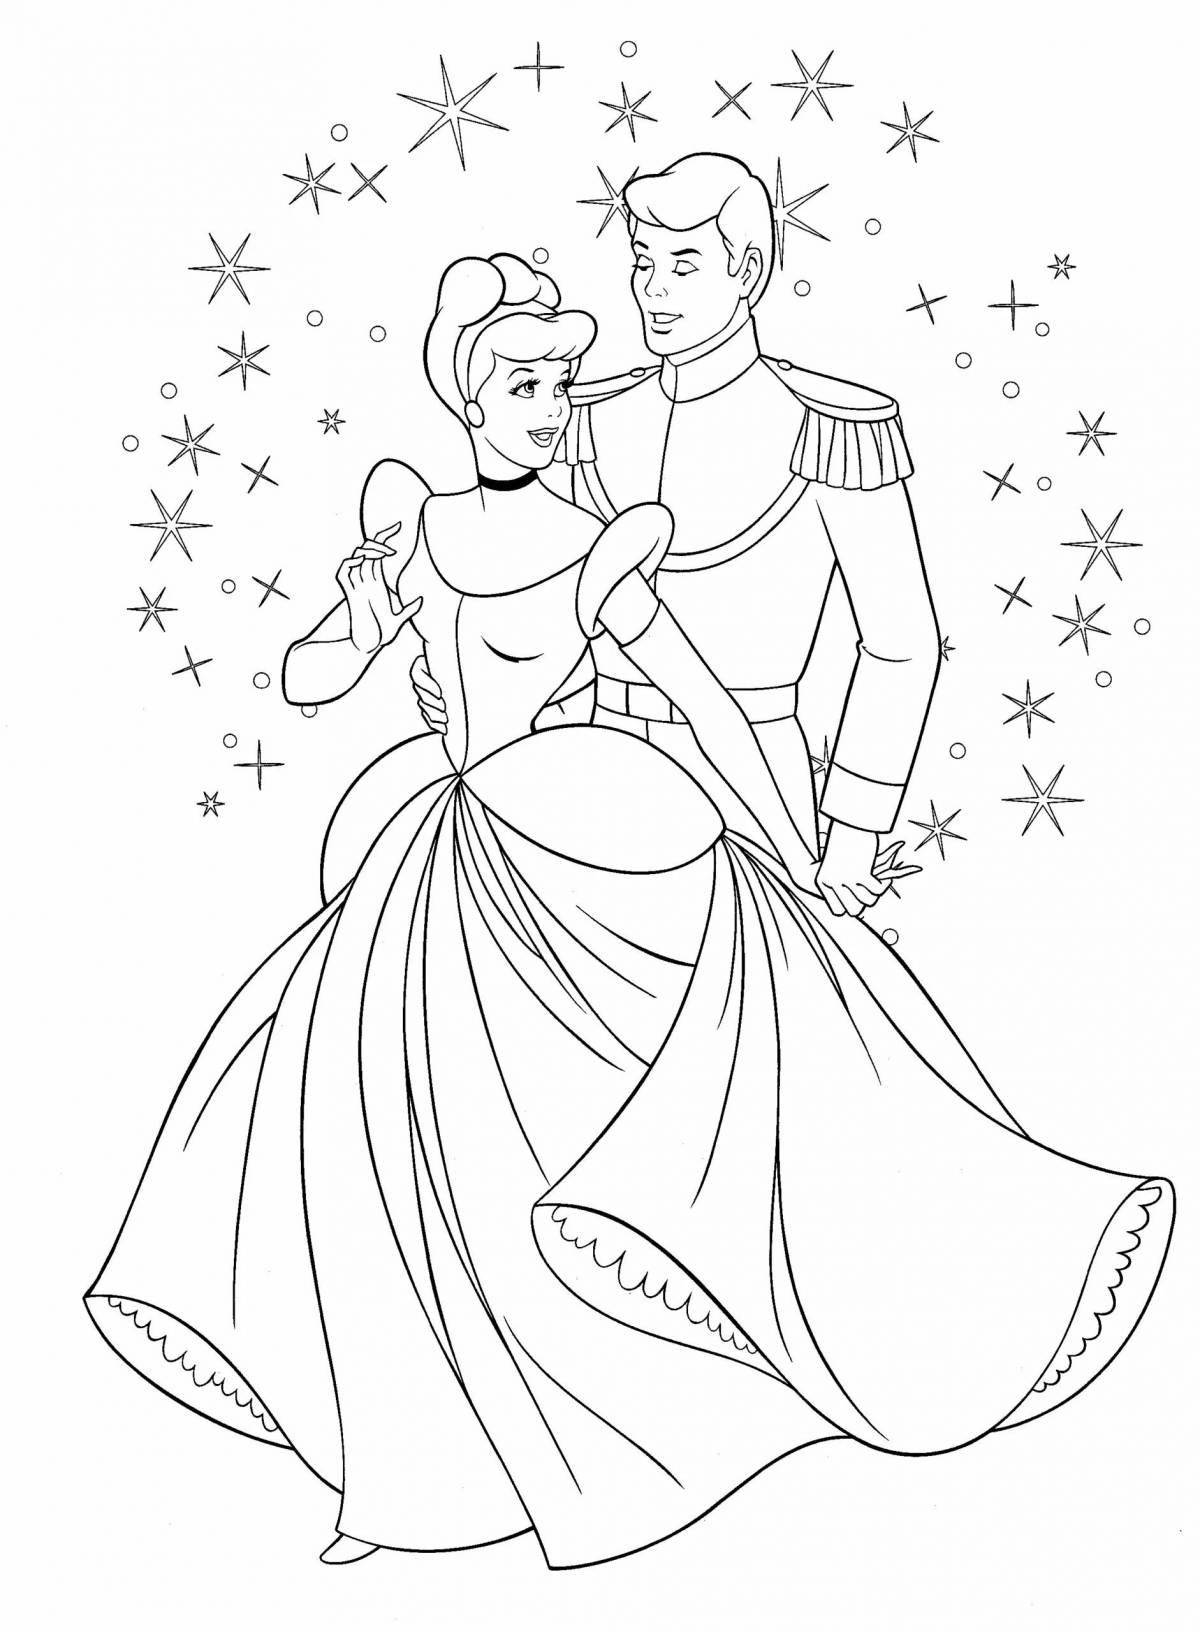 Disney shining cinderella coloring page